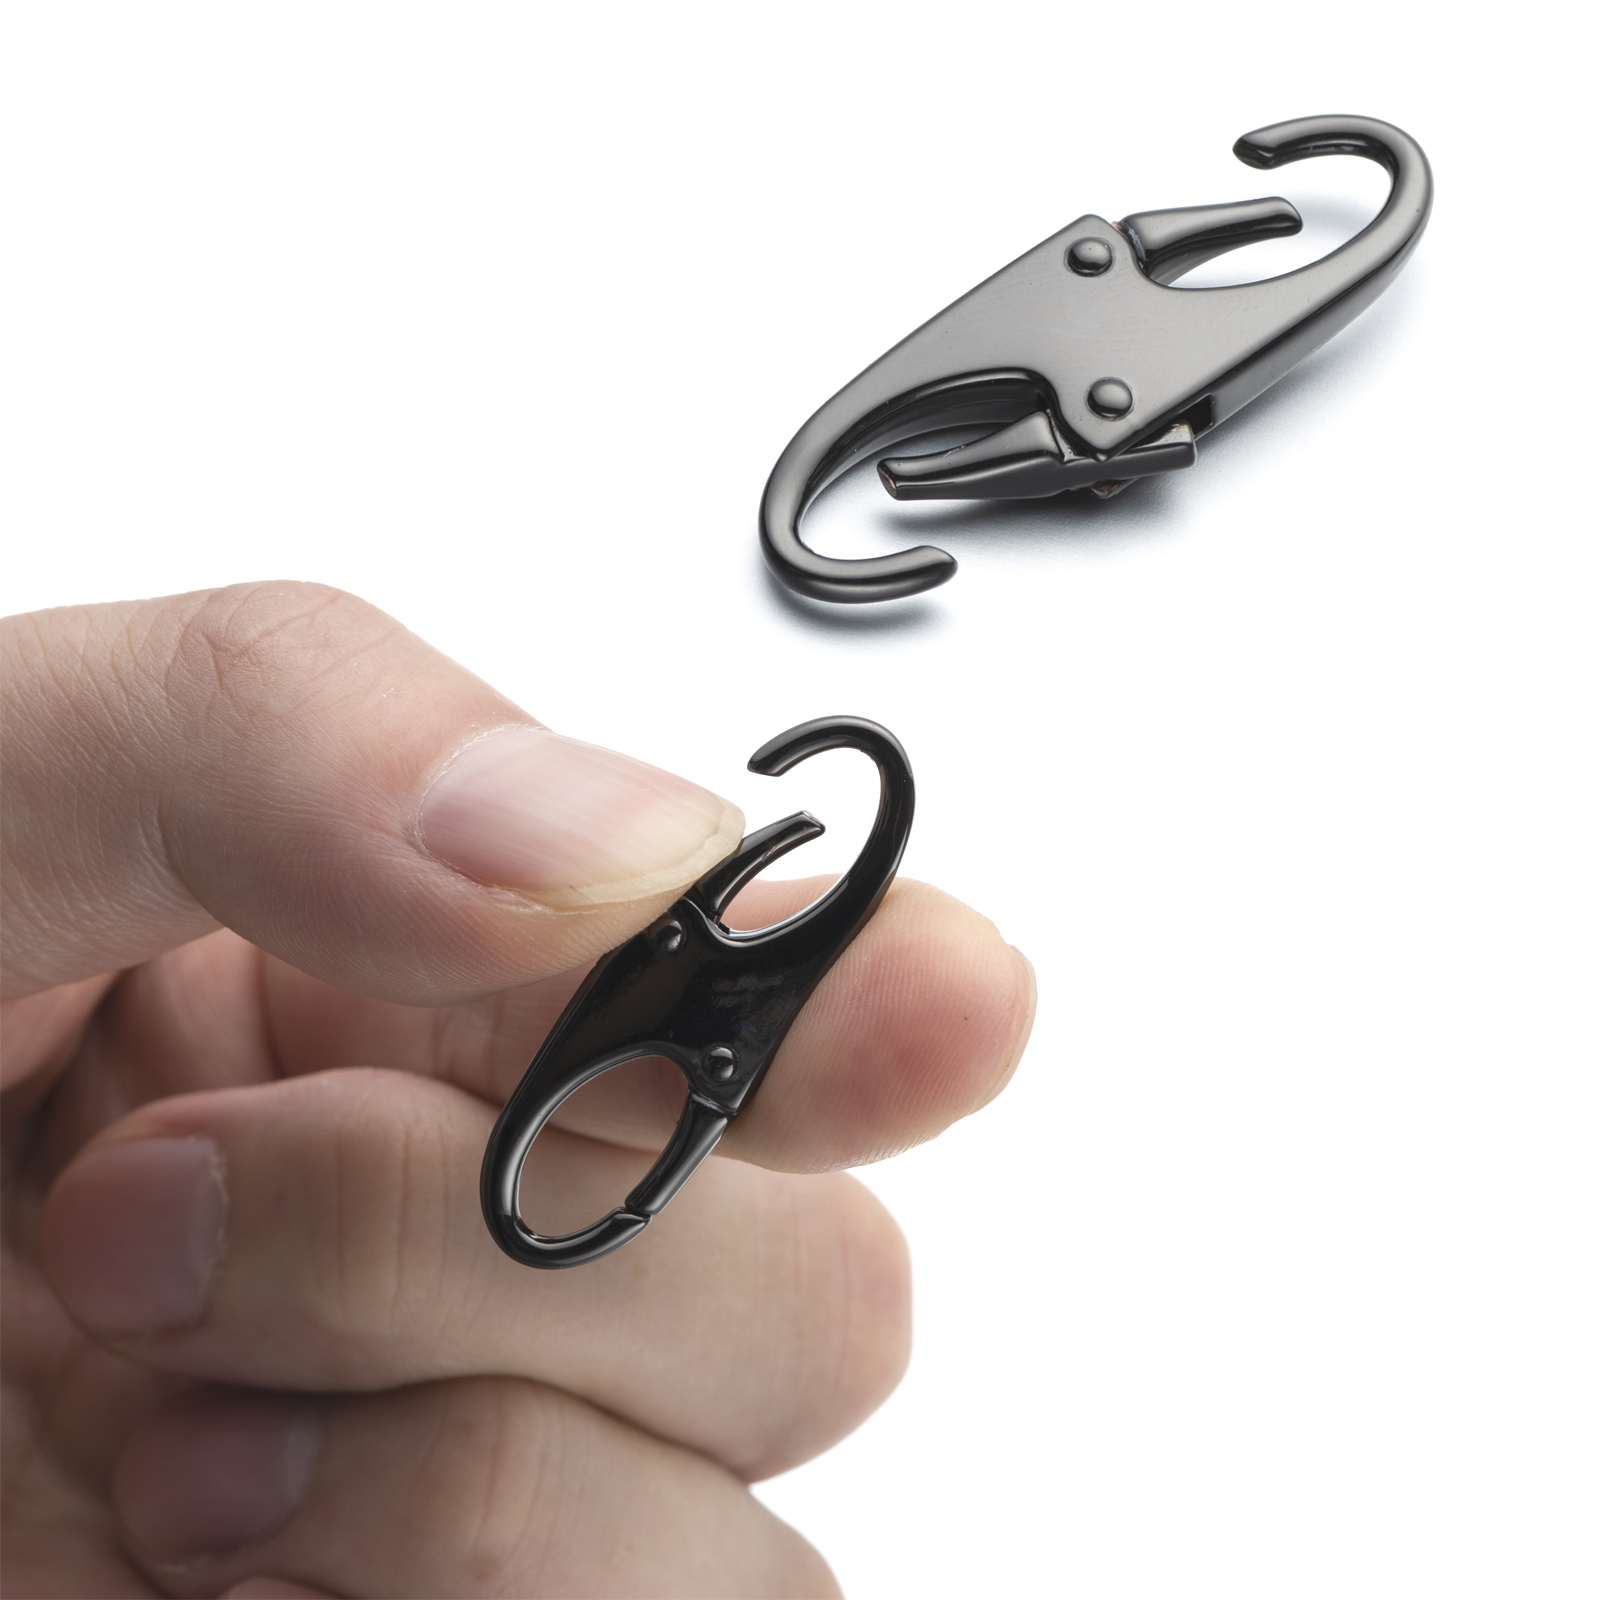 Zpsolution Zipper Clip Theft Deterrent- Keep the Zipper Closed